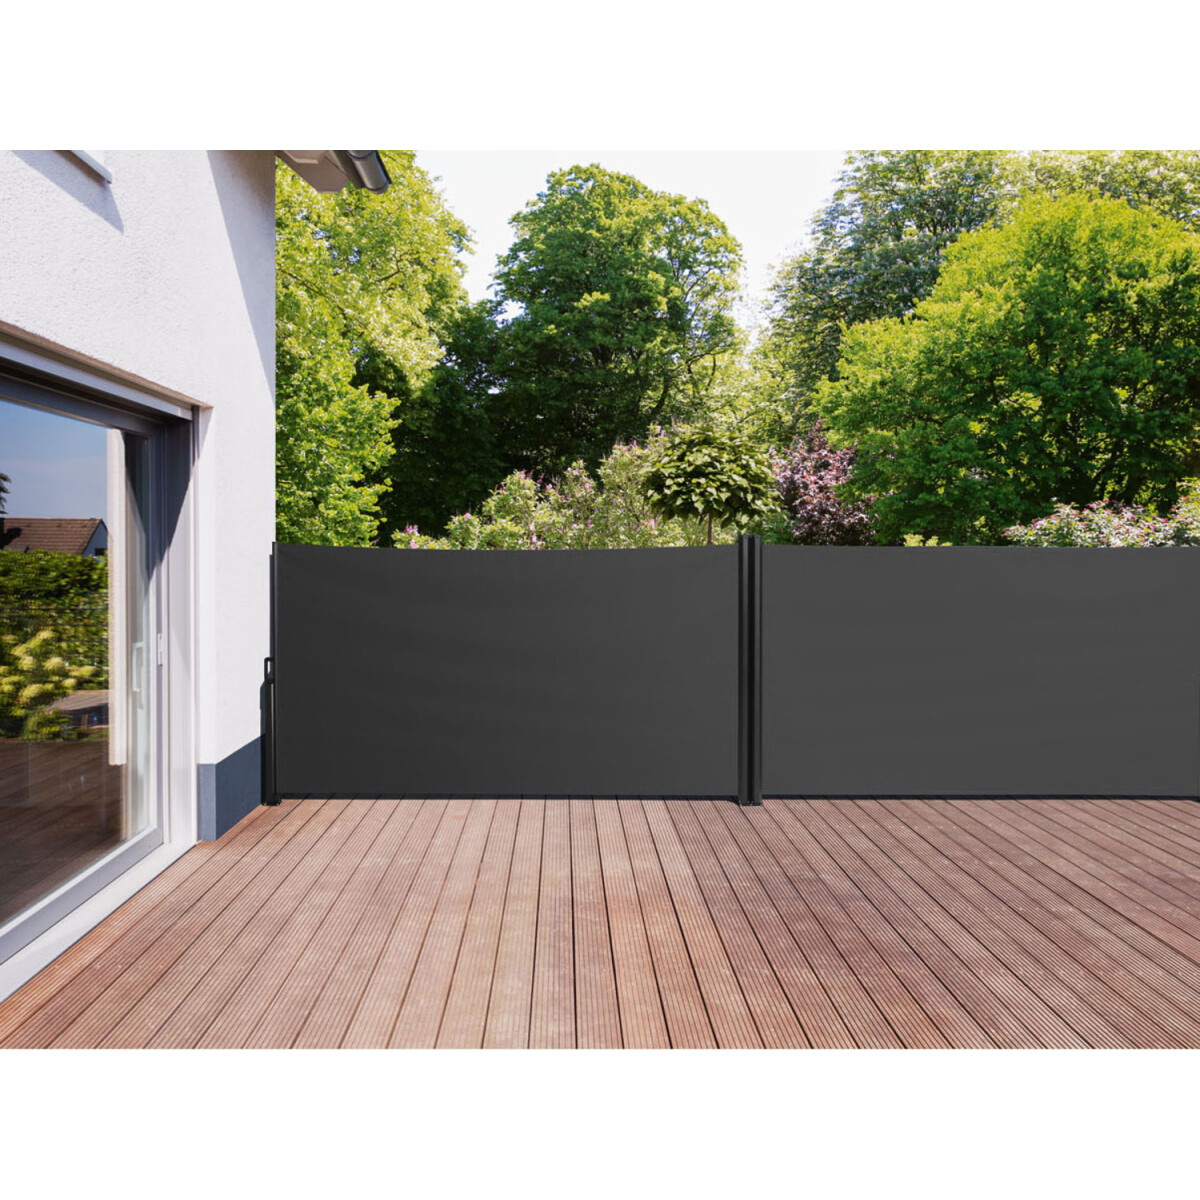 LIVARNO home Doppel Seitenmarkise, 160x600 cm, anthrazit - B-Ware sehr gut,  94,99 € | Markisen